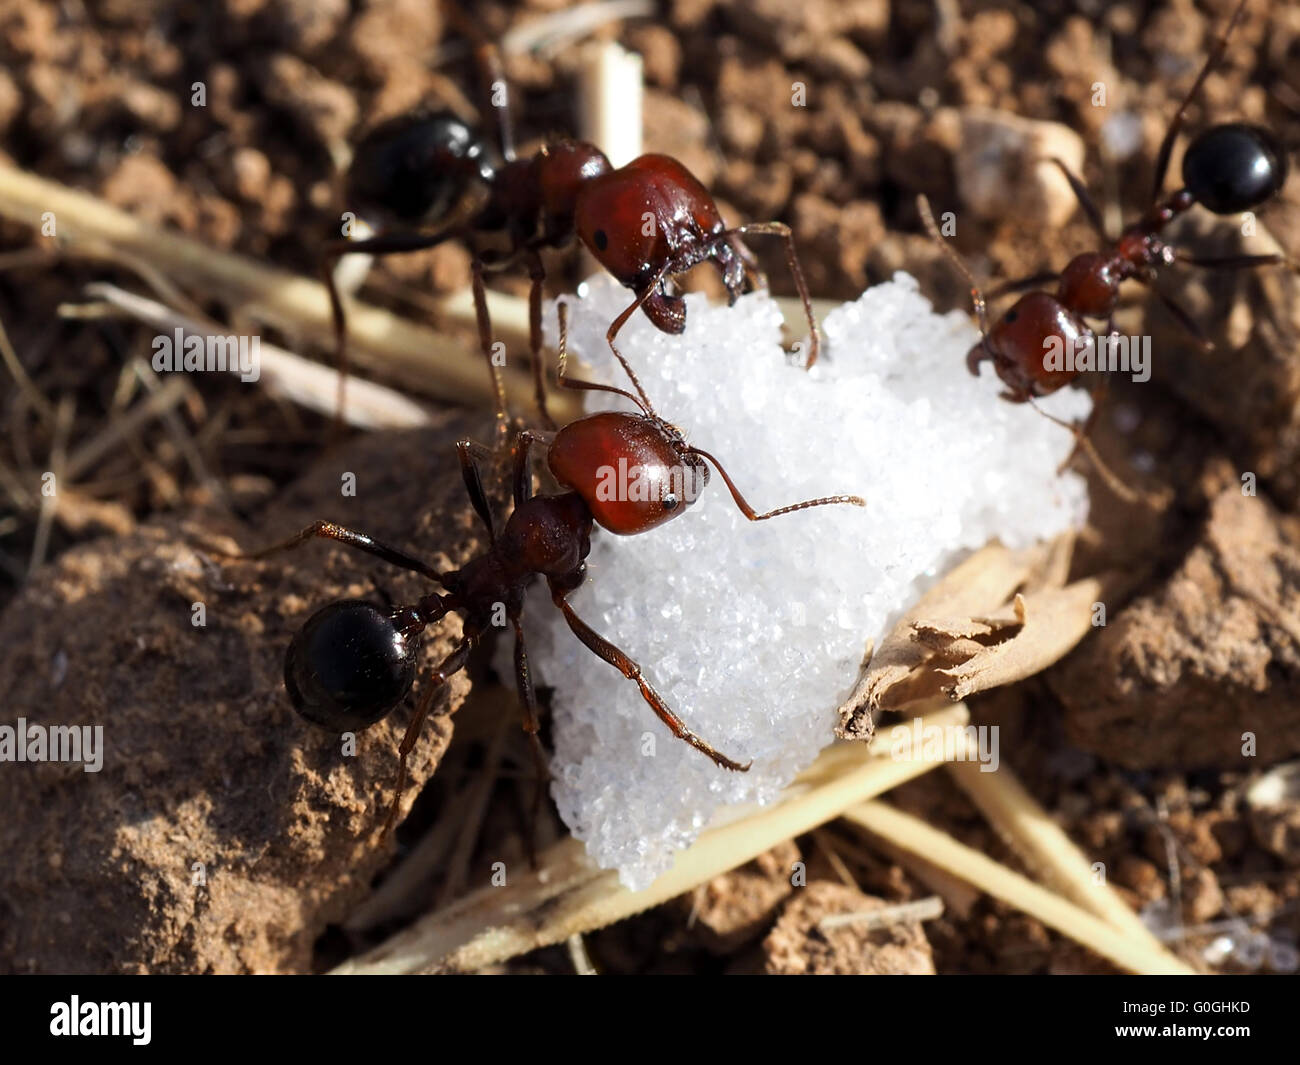 Ameisen Zucker gefunden und nehmen sie zu ihrem Nest. Makro-Aufnahmen. Stockfoto